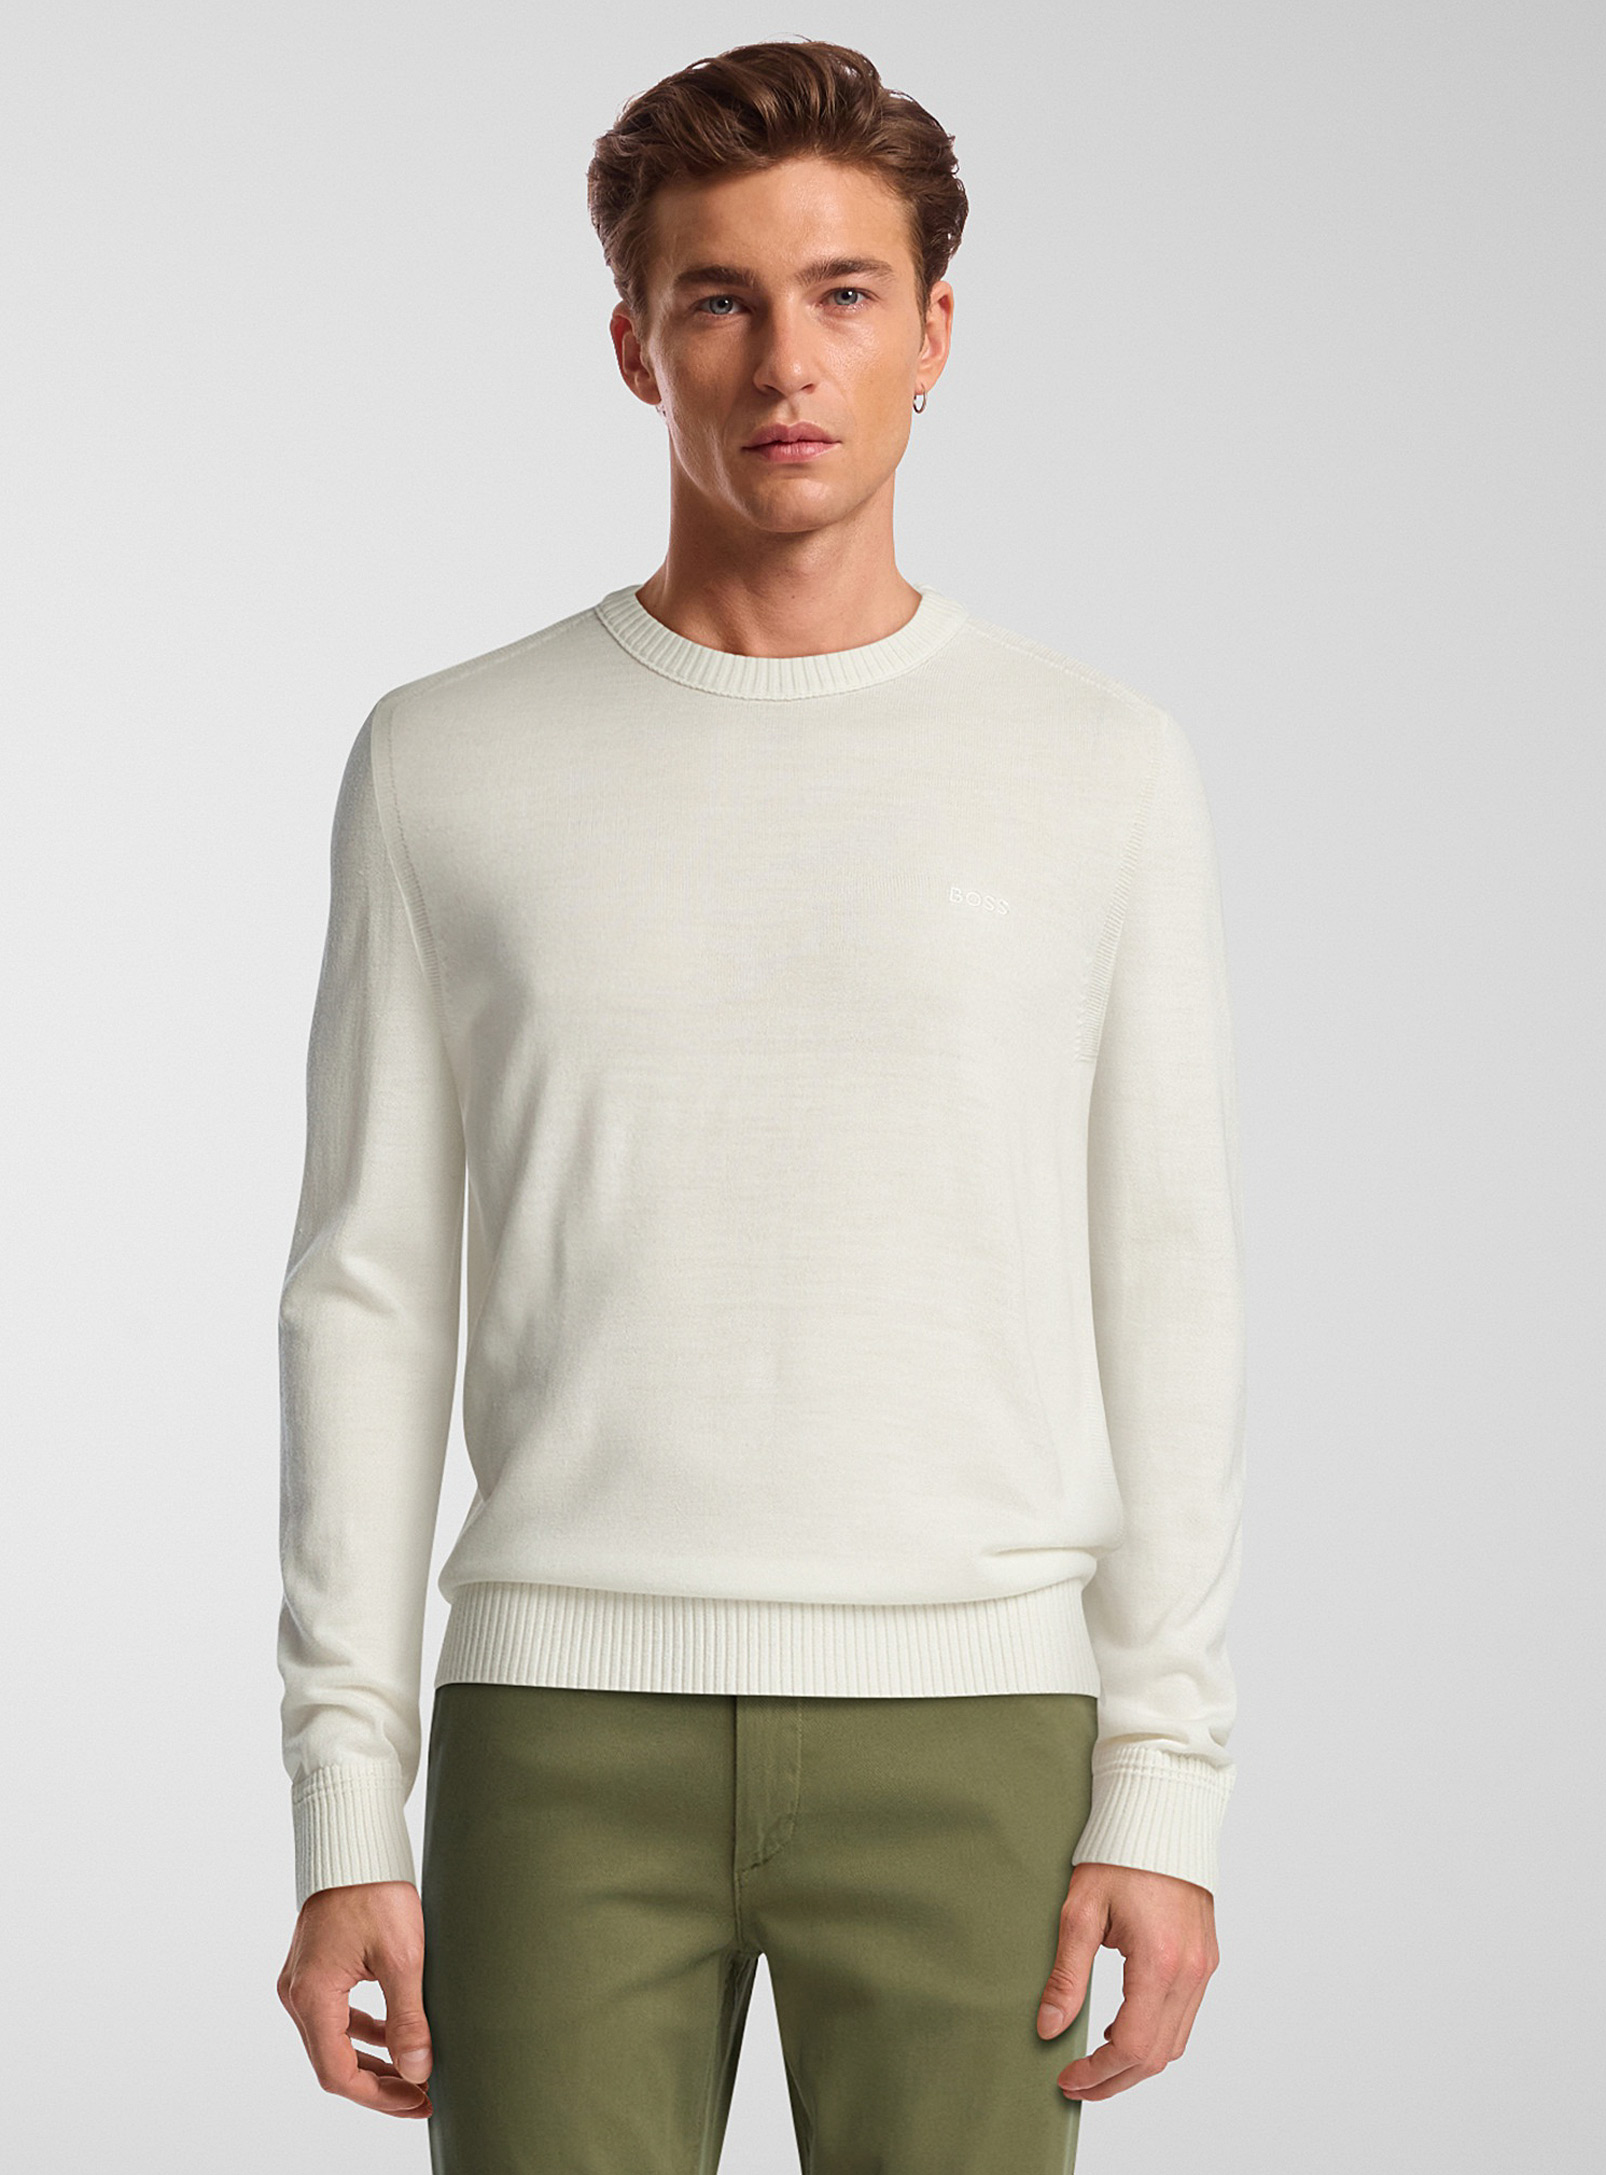 Hugo Boss Avac Minimalist Sweater In White